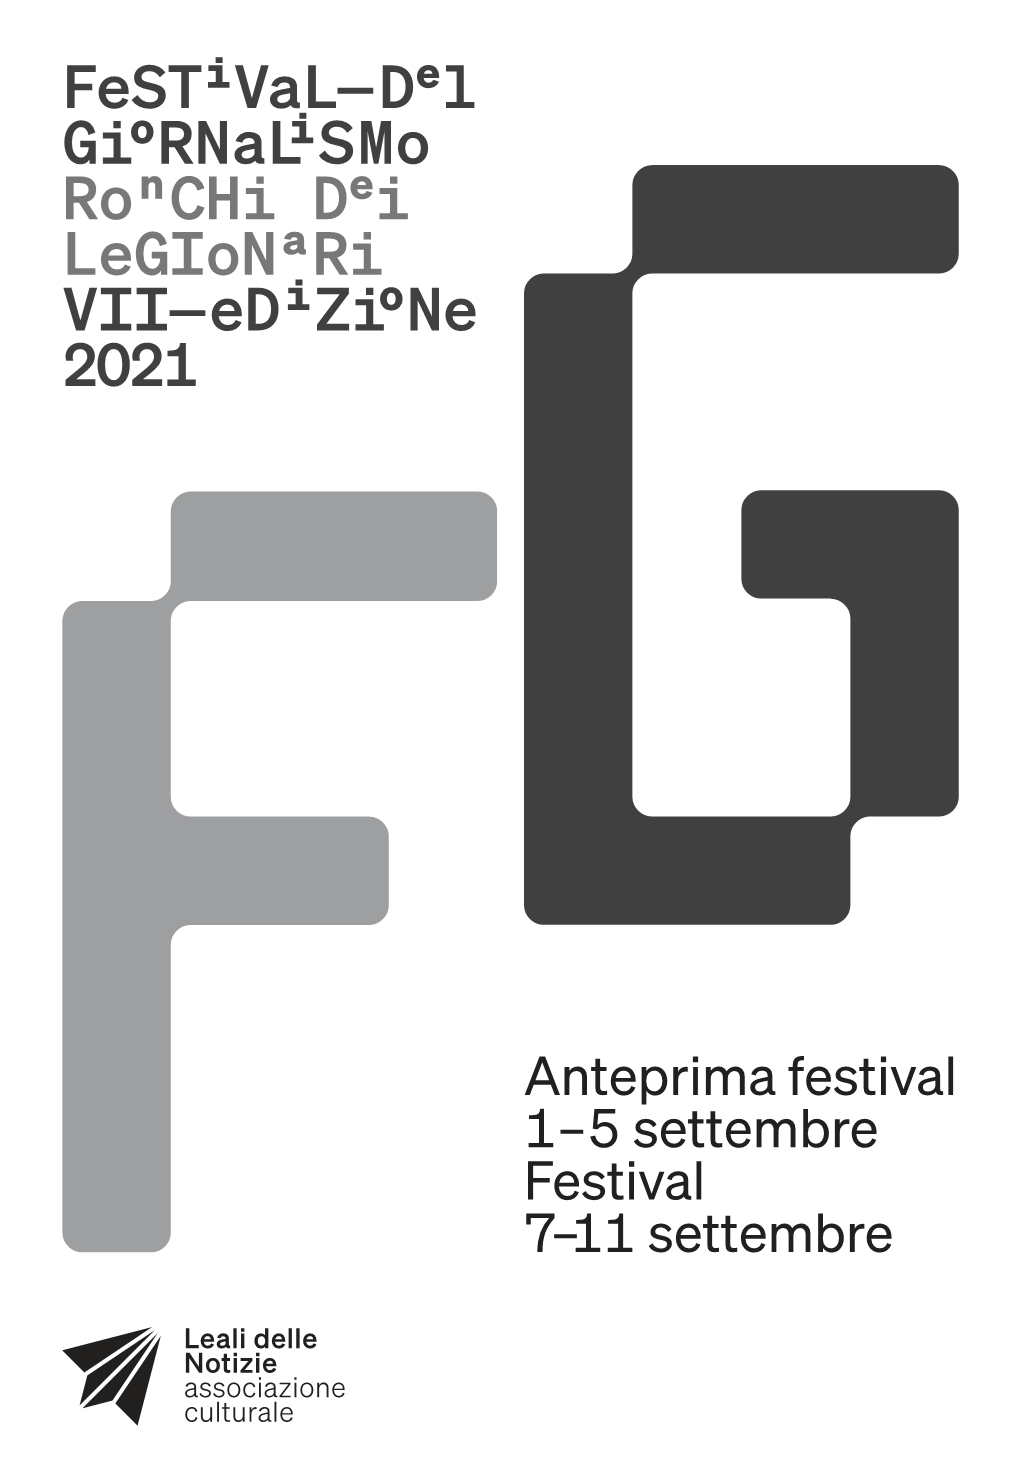 Festival—Del Giornalismo Ronchi Dei Legionari VII